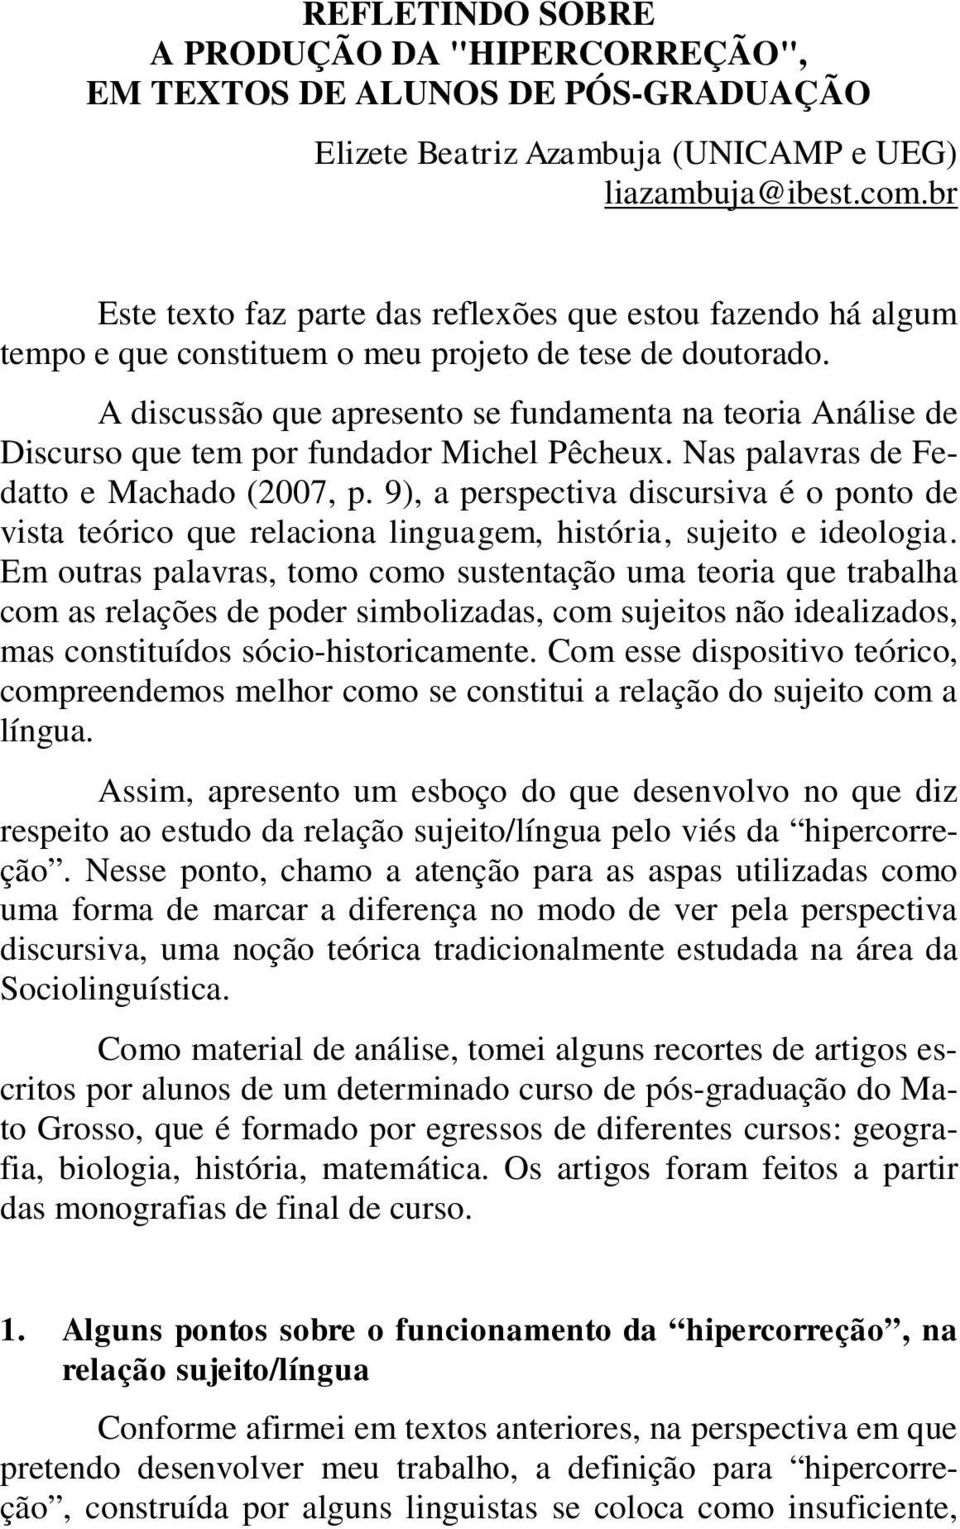 A discussão que apresento se fundamenta na teoria Análise de Discurso que tem por fundador Michel Pêcheux. Nas palavras de Fedatto e Machado (2007, p.